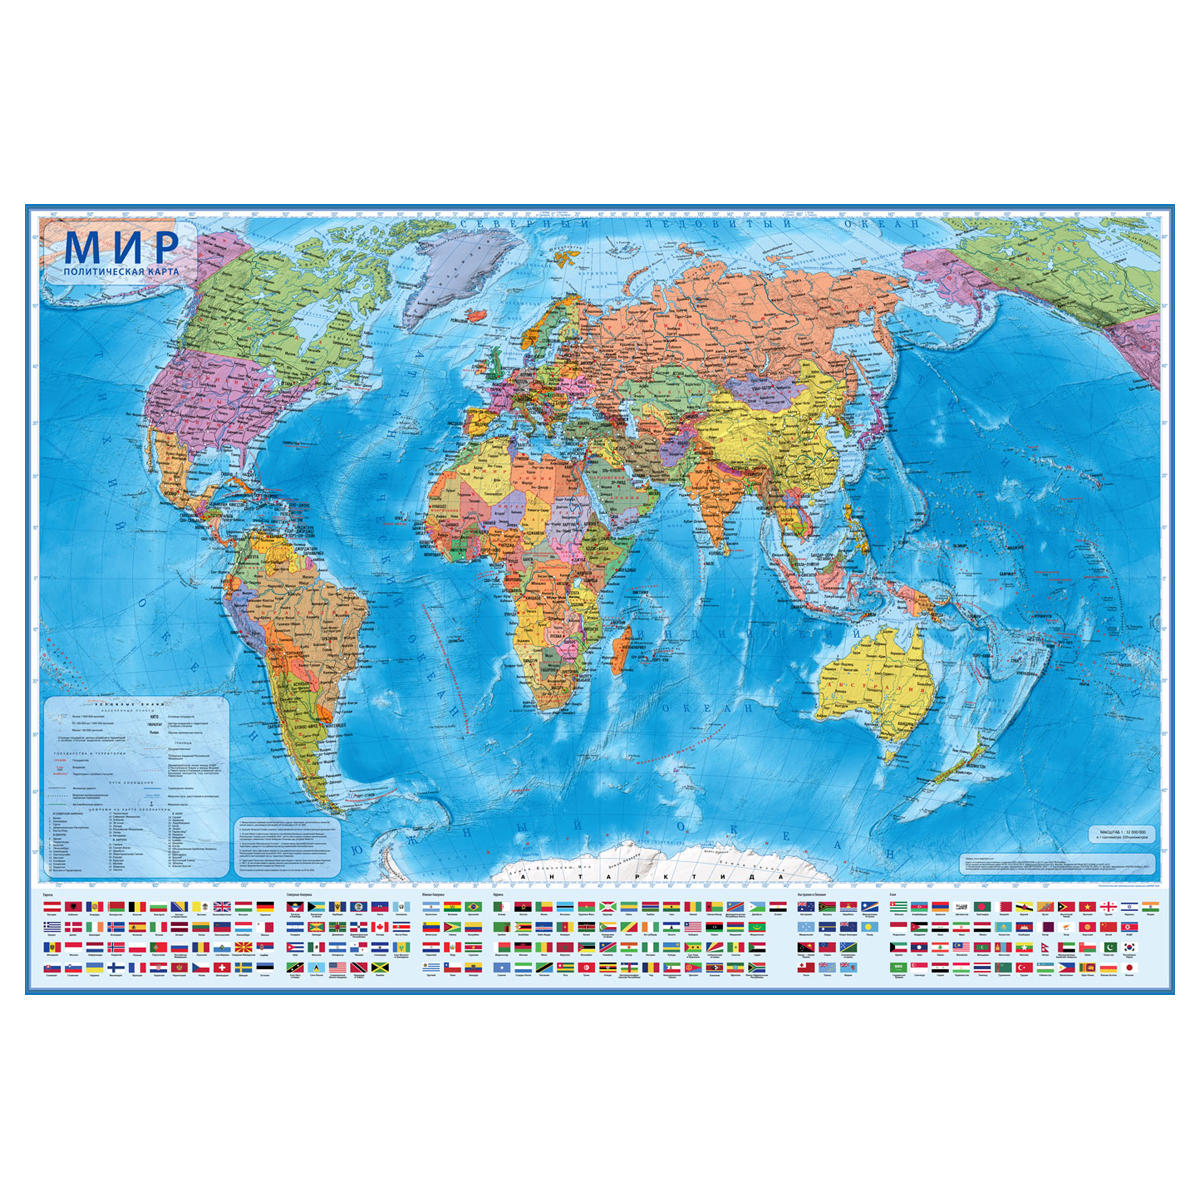 Карта Мир политическая Globen, 1:15,5млн., 1990*1340мм, интерактивная, с ламинацией, европодвес